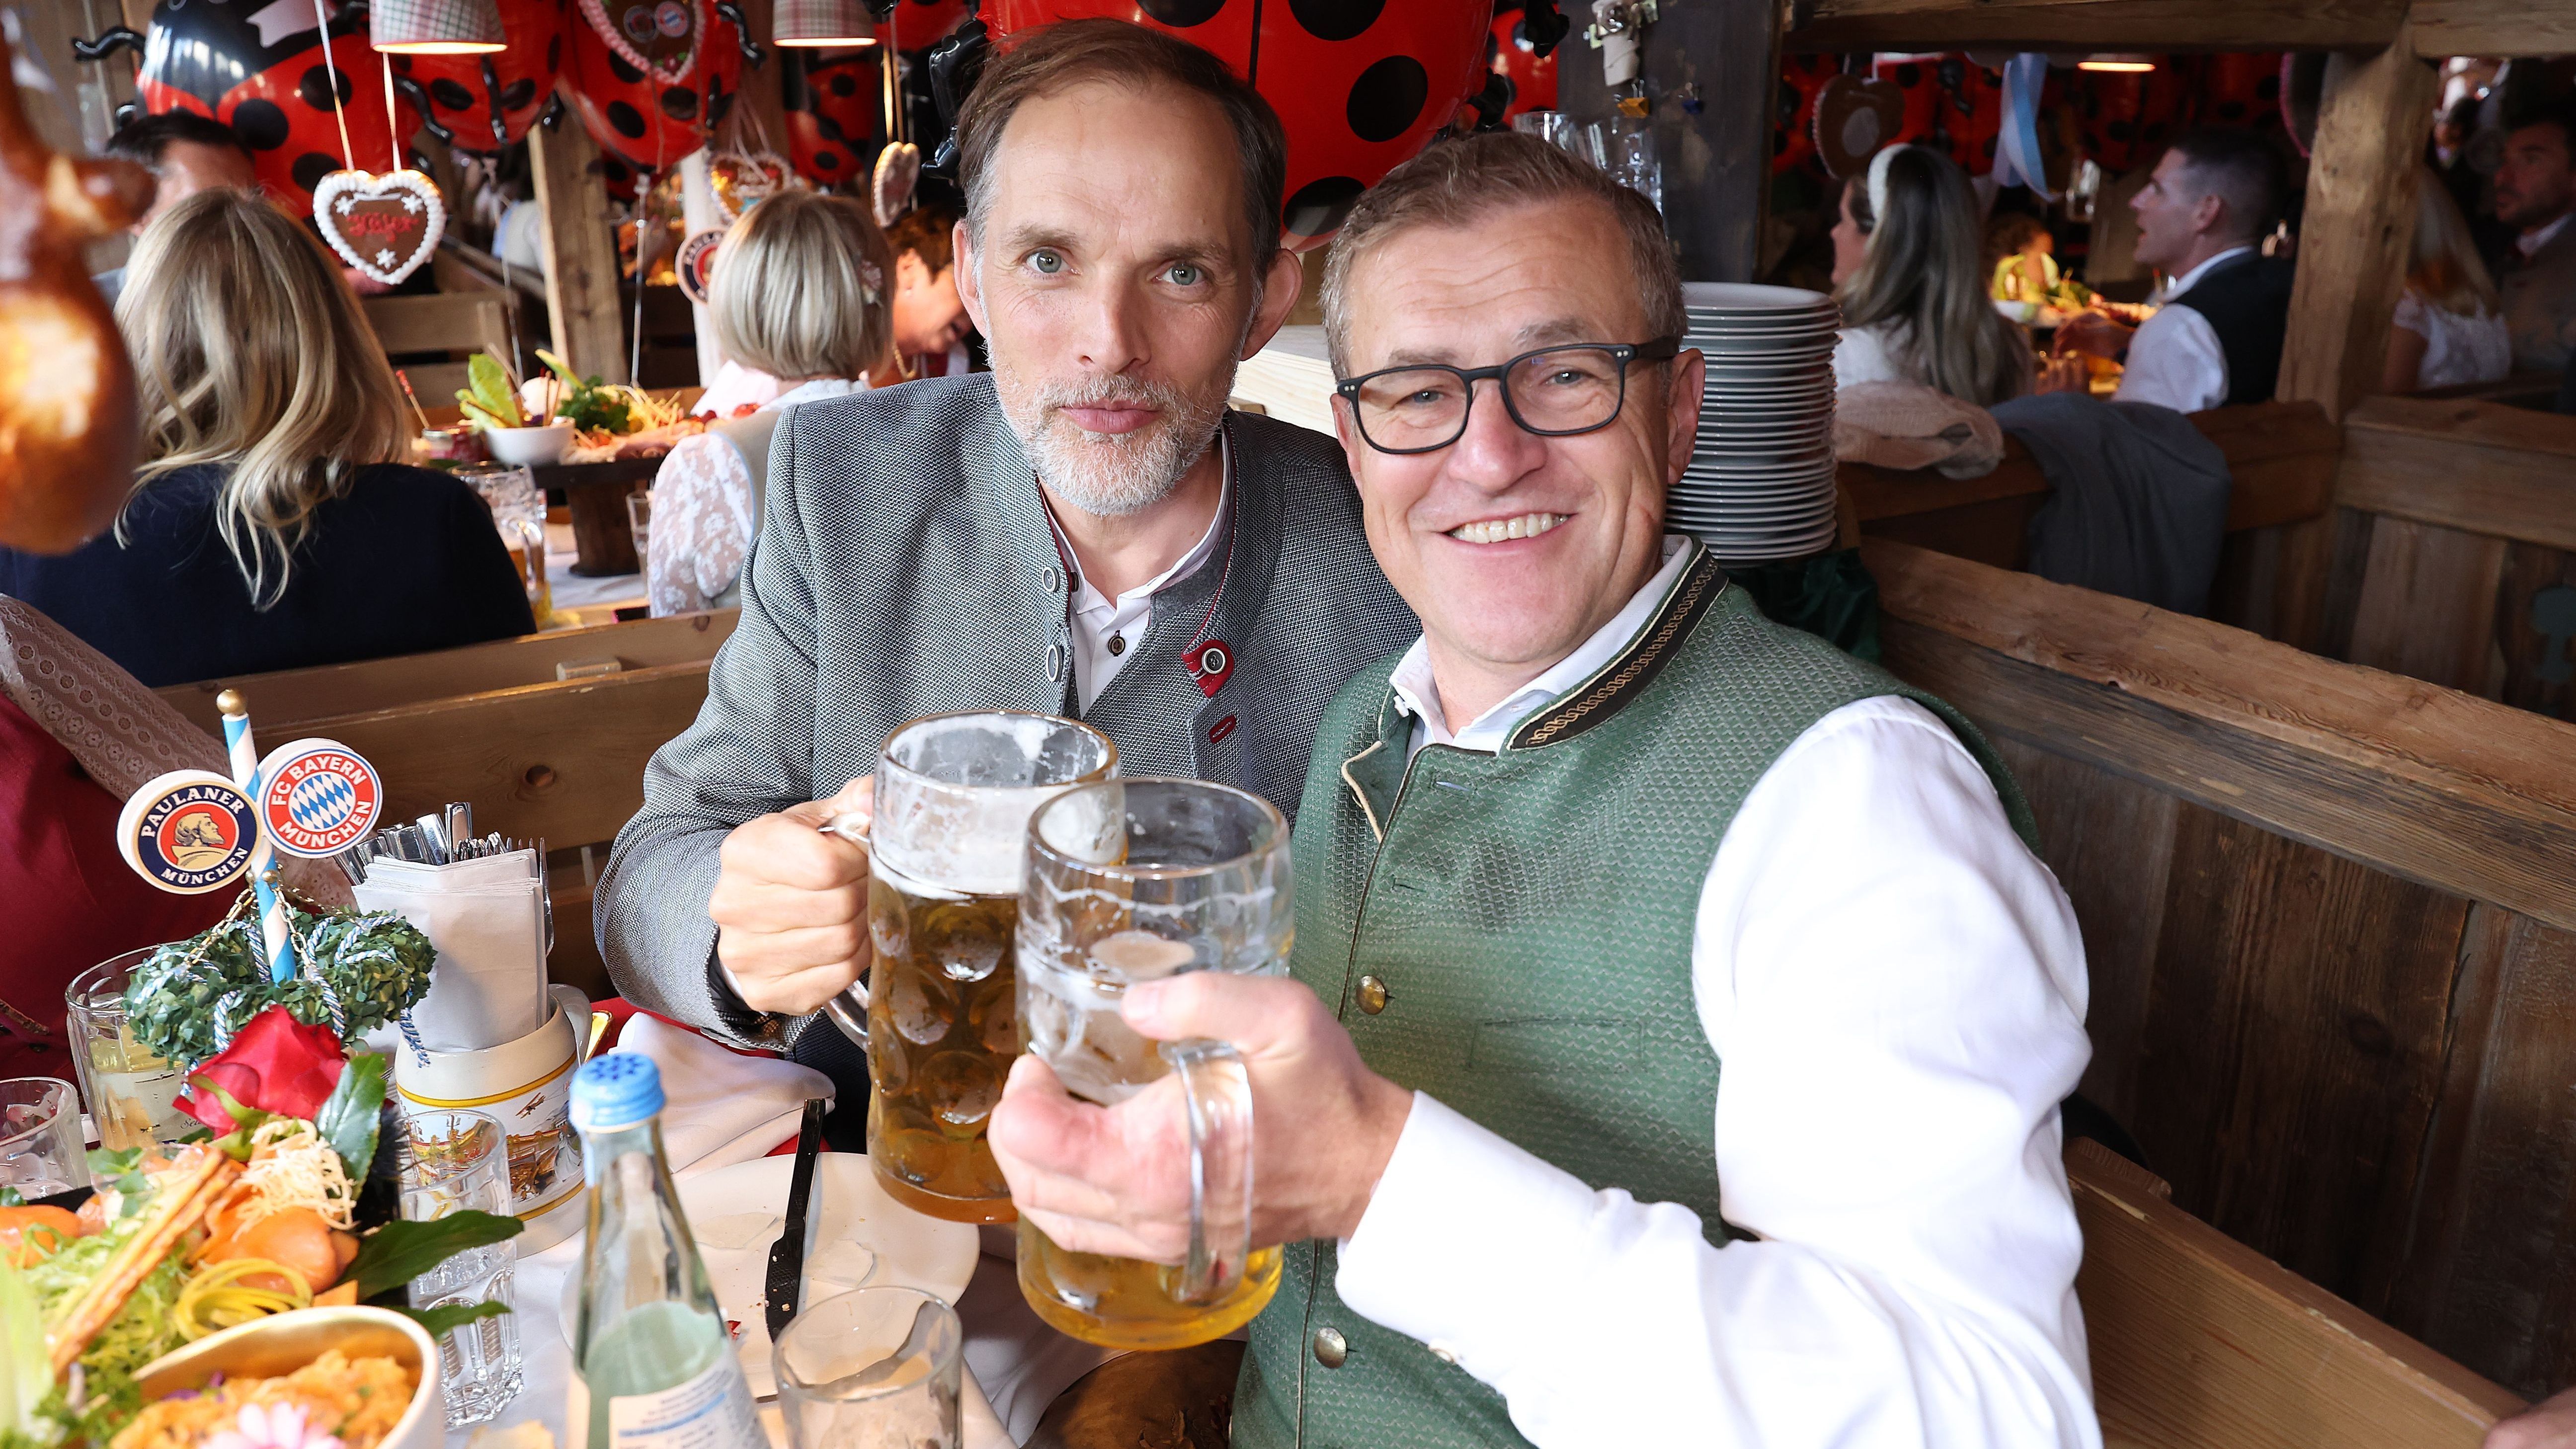 <strong>Thomas Tuchel und Jan-Christian Dreesen</strong><br>Der Bayern-Coach stößt auch mit dem Vorstandsvorsitzenden Jan-Christian Dreesen (r.) an. Der Klub-Boss hat offenbar mehr Durst mitgebracht.